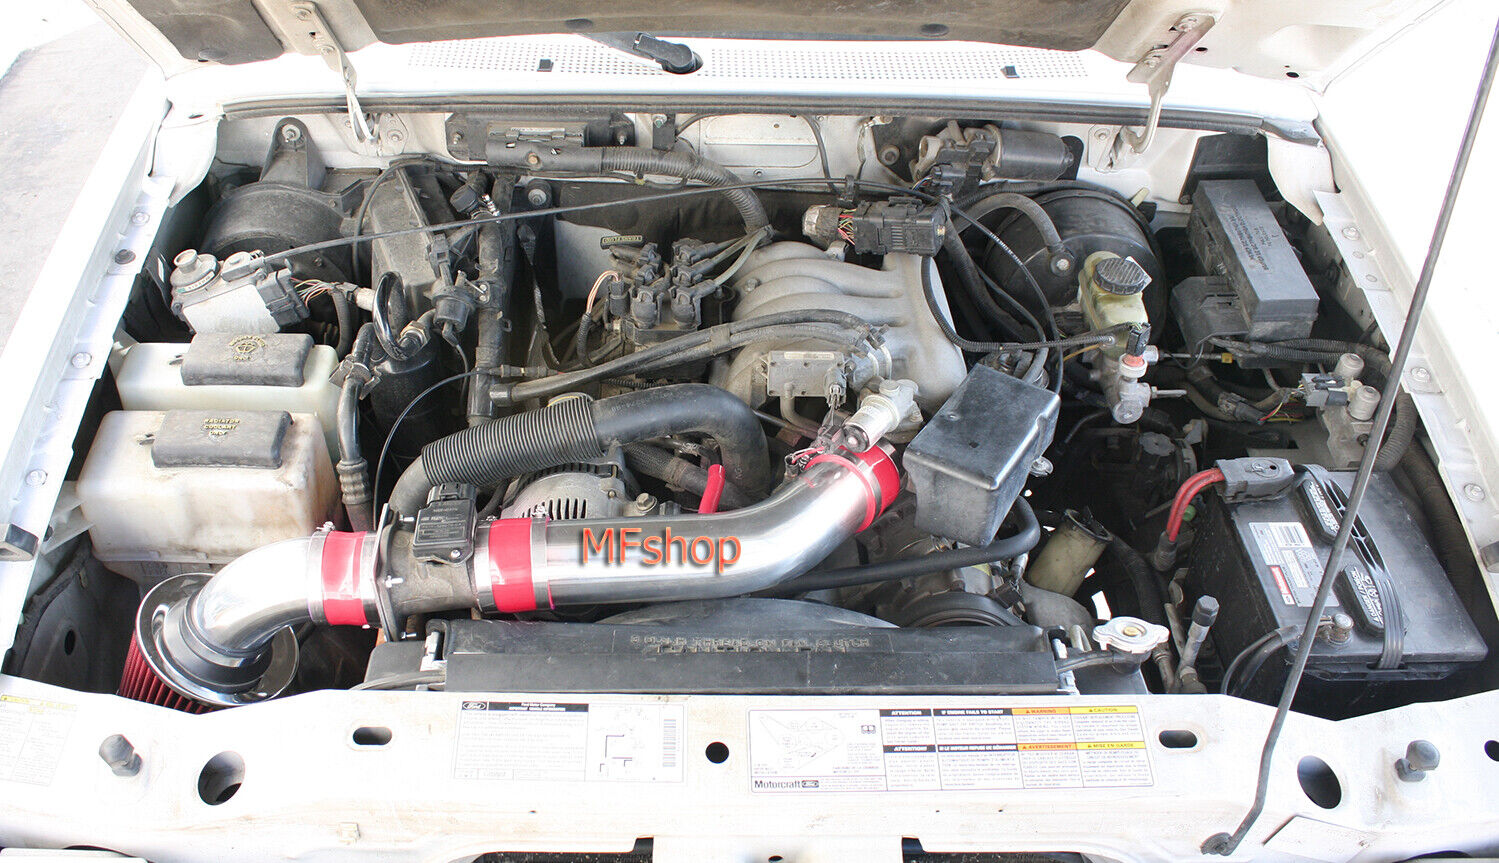 RED For 2PC 2001-2003 Ford Ranger 4.0L V6 Sohc Air Intake System Kit + Filter